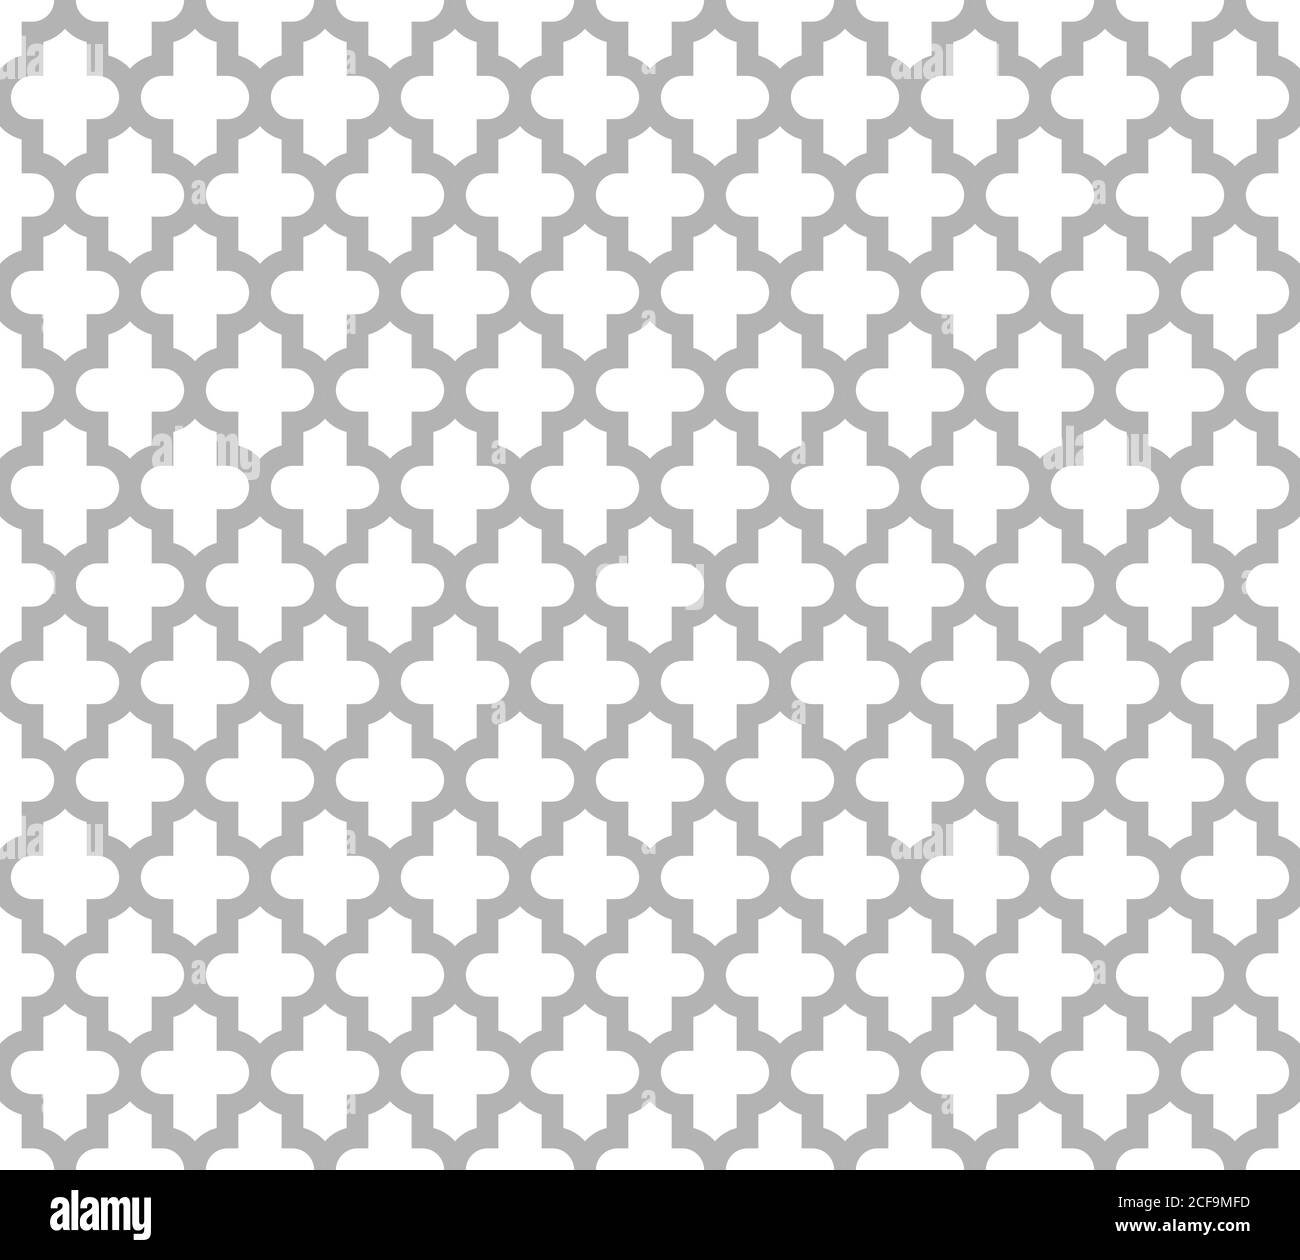 Marokkanischen islamischen nahtlose Muster Hintergrund in grau und weiß. Abstraktes Ornamentdesign im Vintage- und Retro-Stil. Einfache flache Vektordarstellung. Stock Vektor